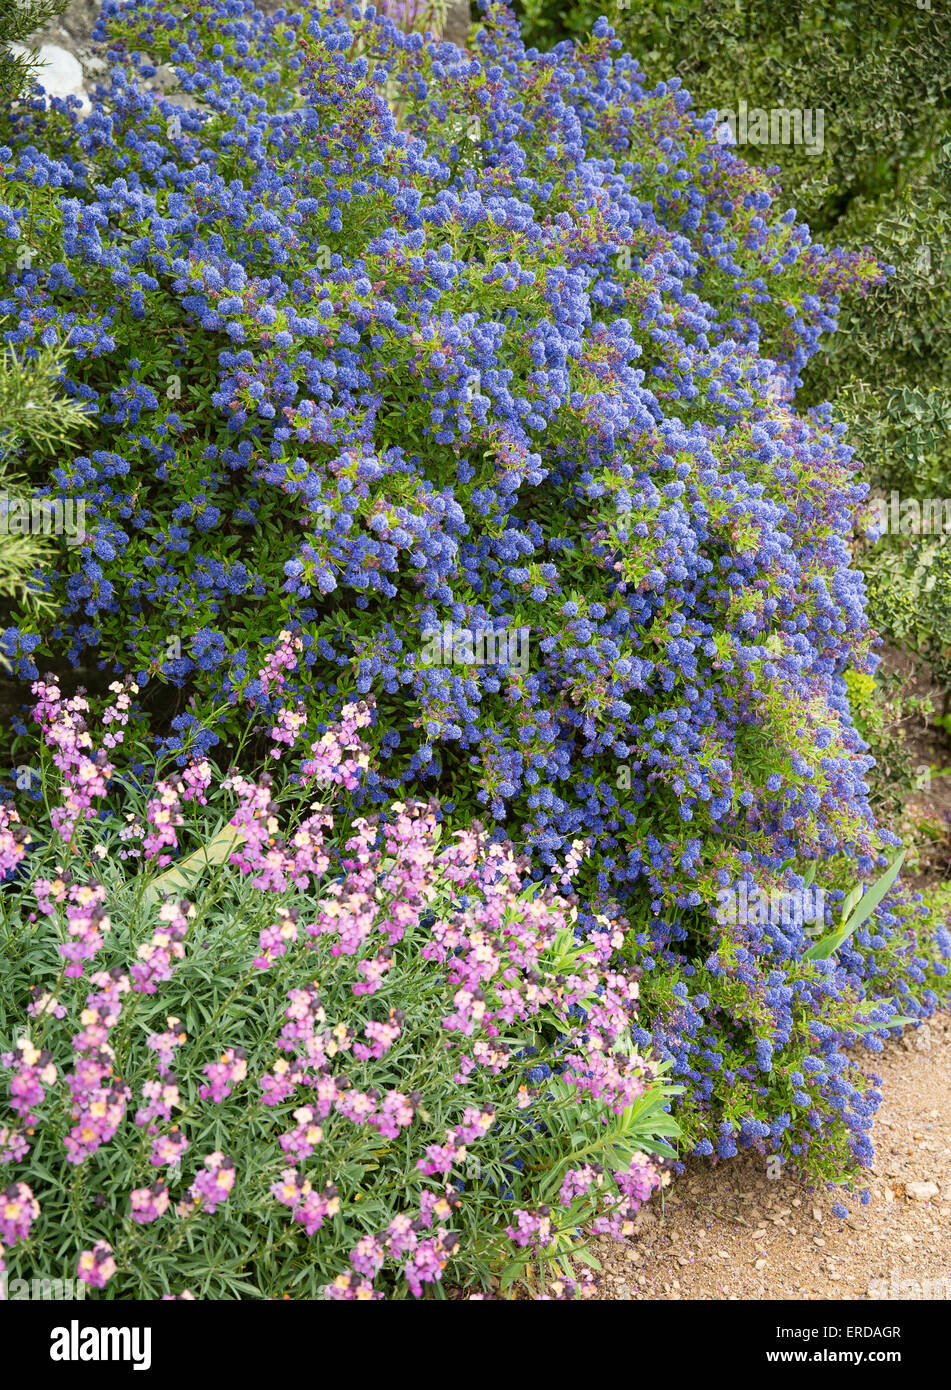 Ceanothus bleu ou rose et lilas californien Erysimum fleurs dans un jardin anglais flower border Banque D'Images